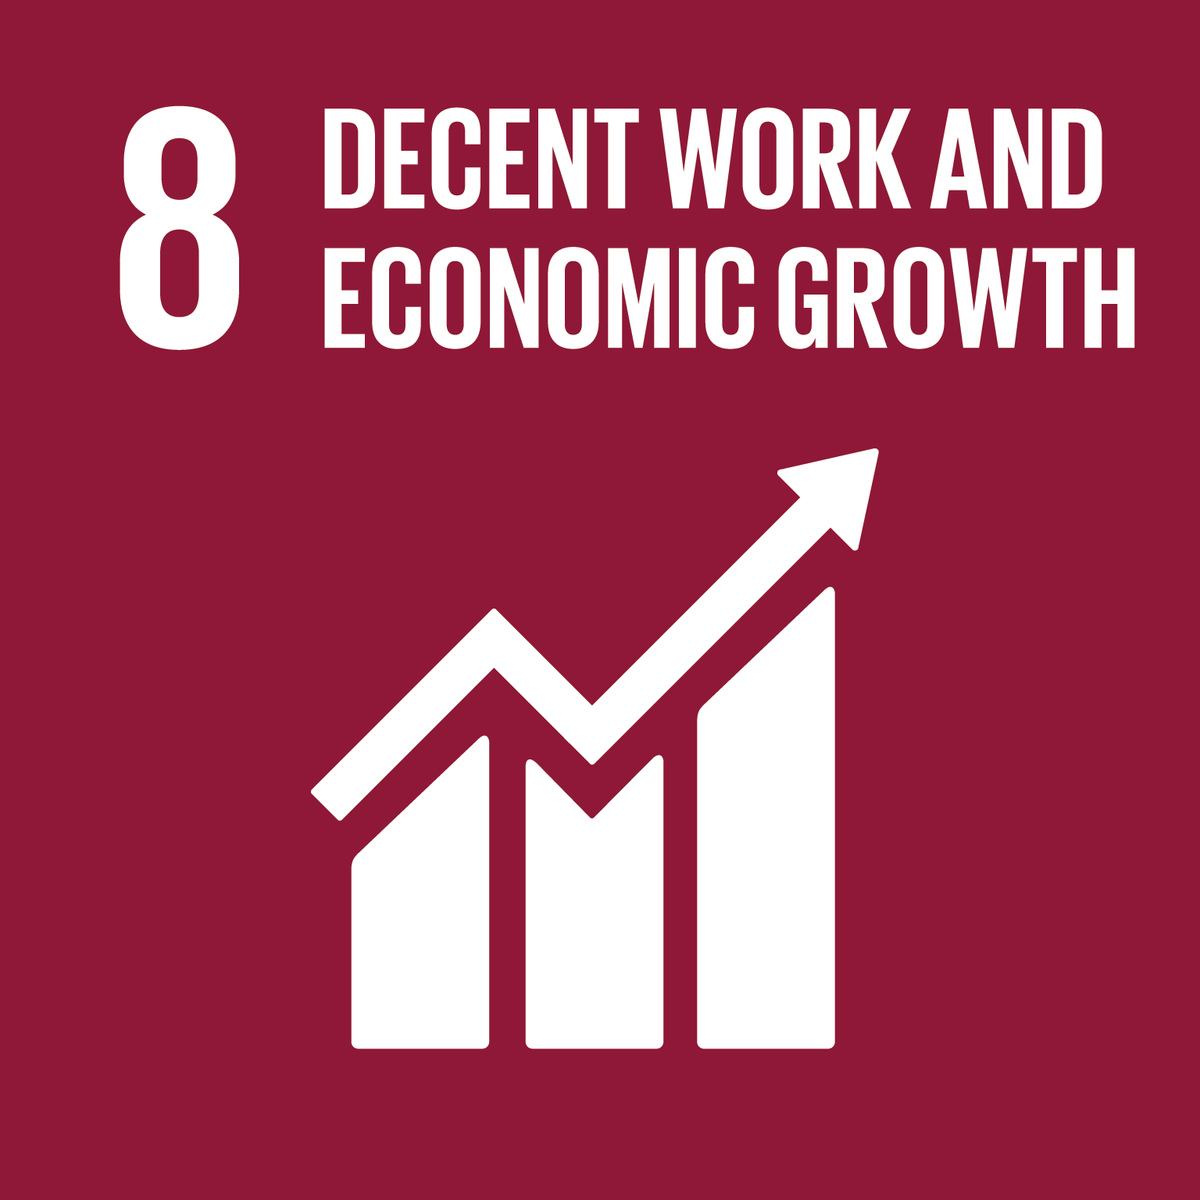 Sustainable Development Goal 8: Economic Growth